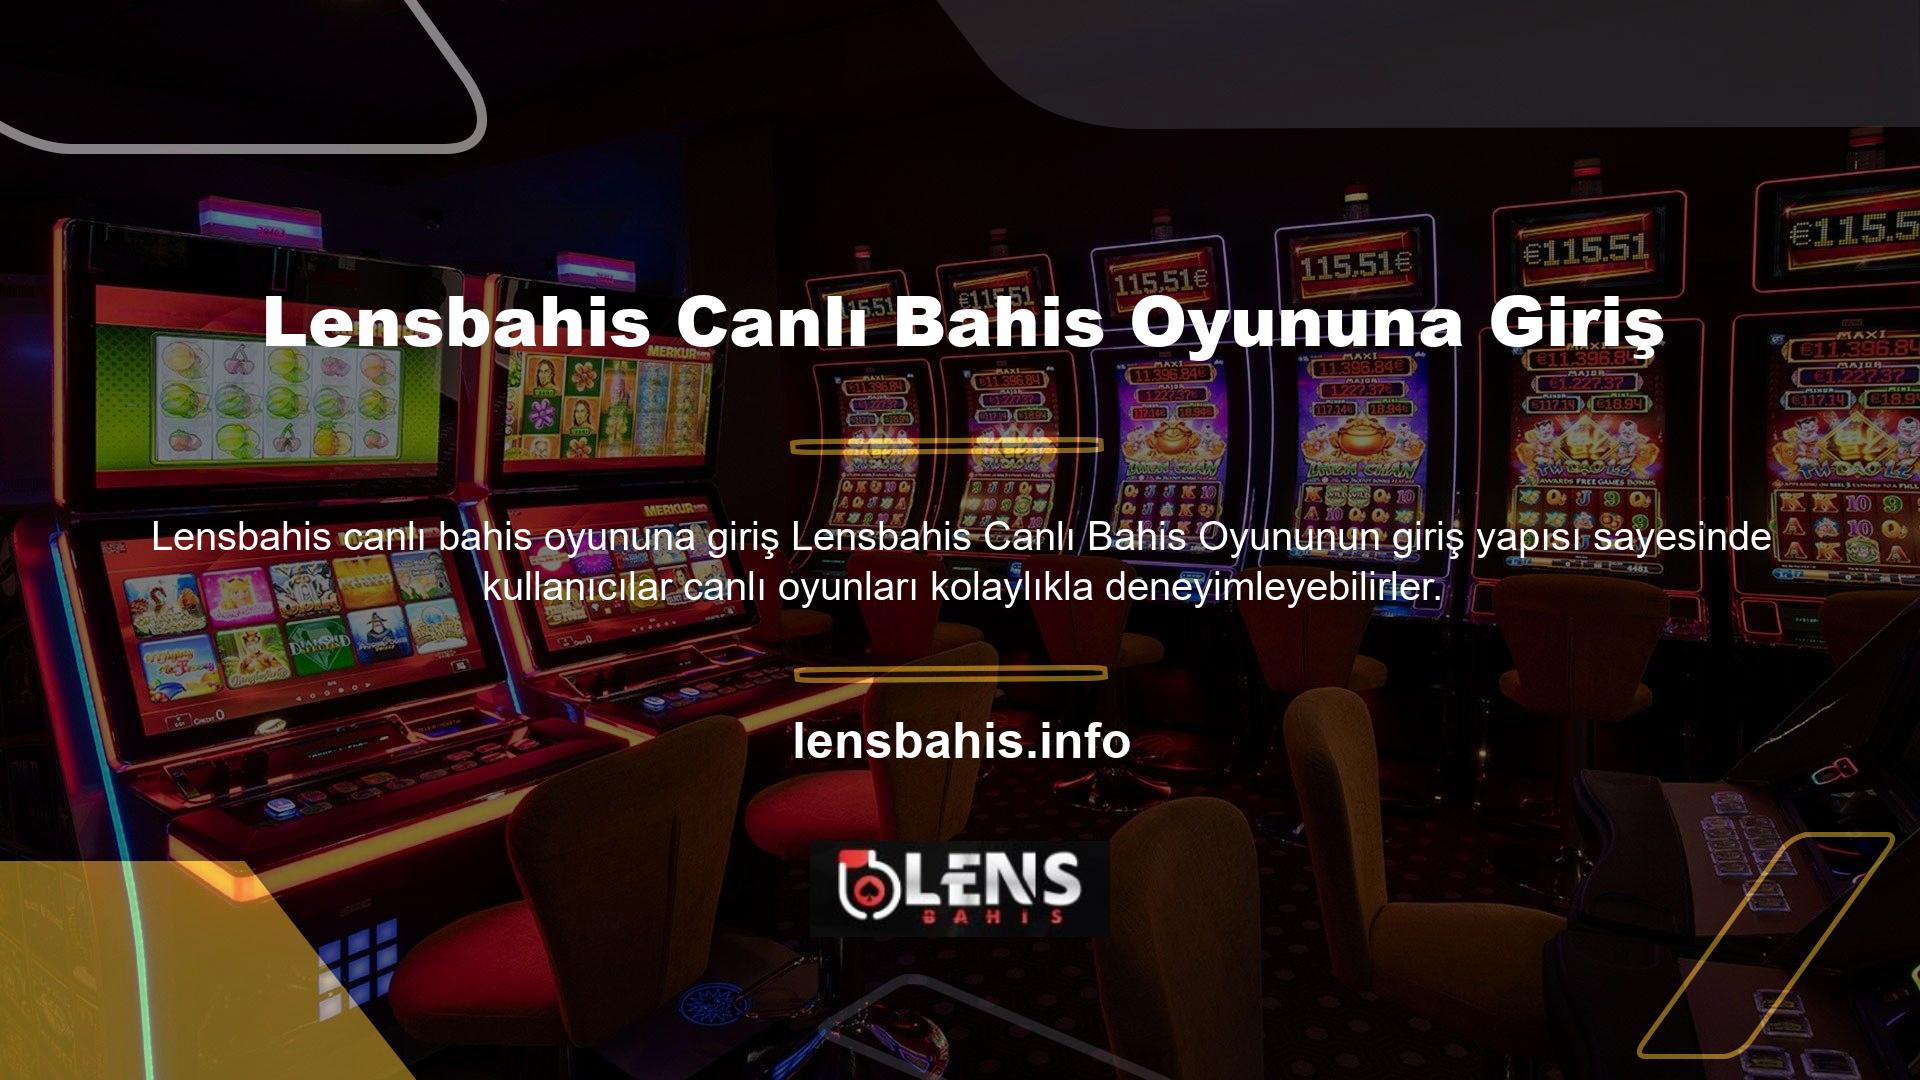 Yani Lensbahis web sitesine giriş bilgileri sürekli değişmektedir